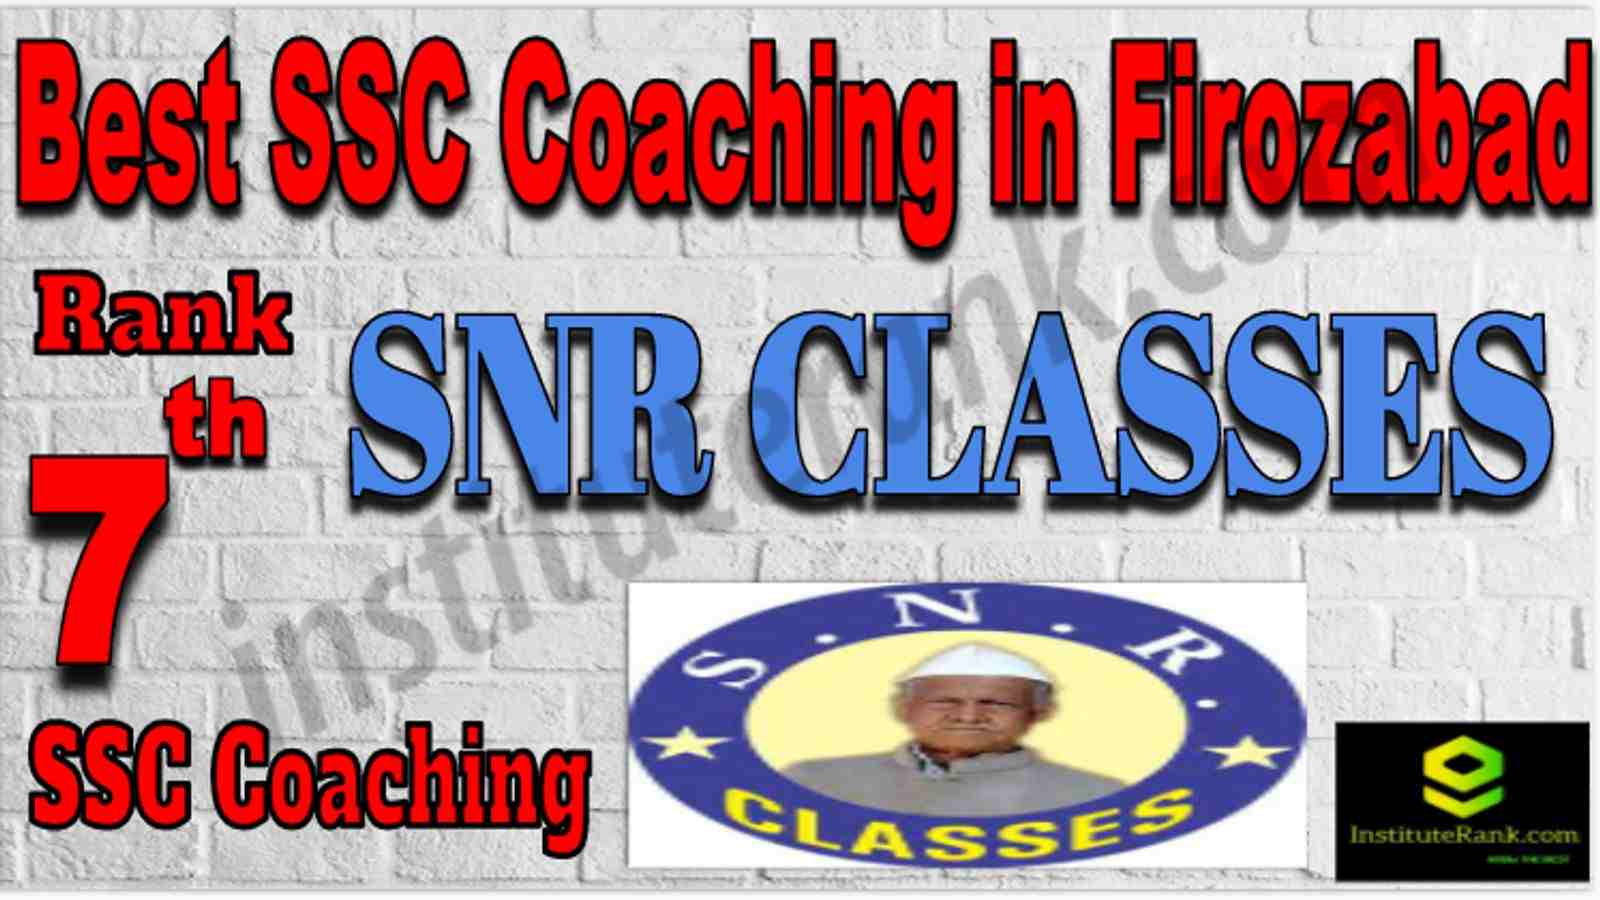 Rank 7 Best SSC Coaching in Firozabad